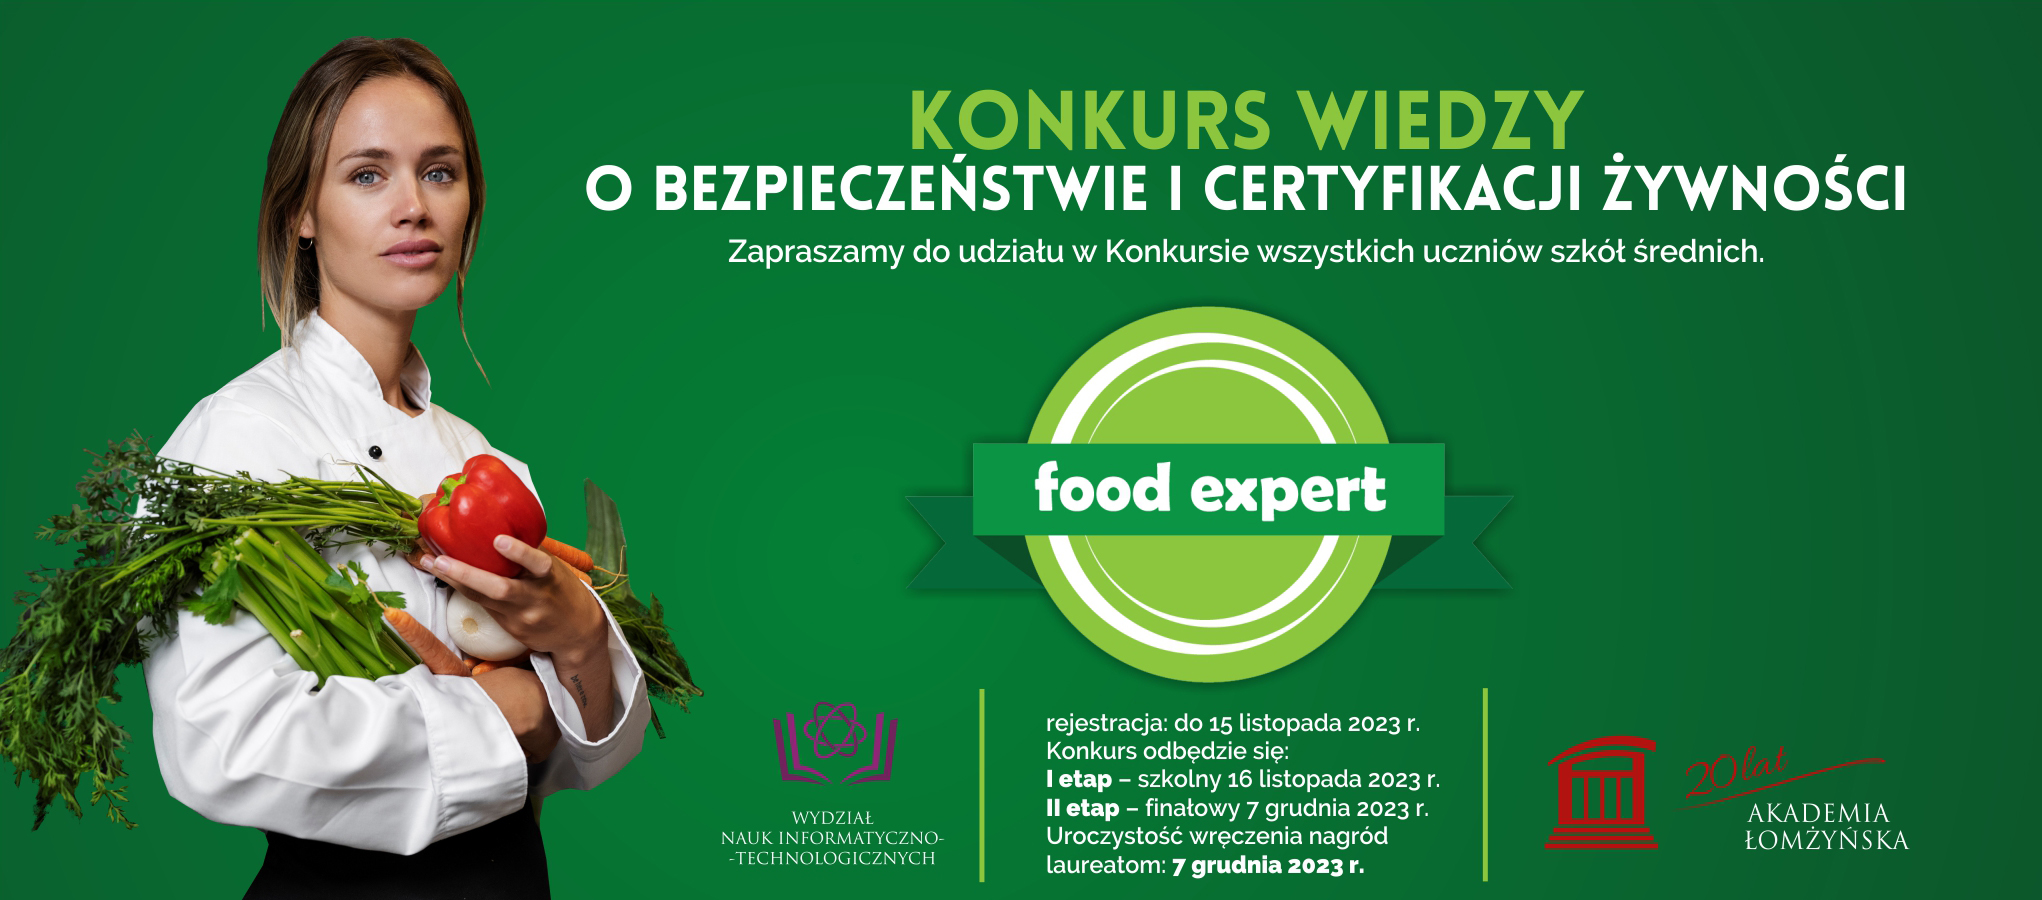 Baner reklamowy konkursu FoodExpert